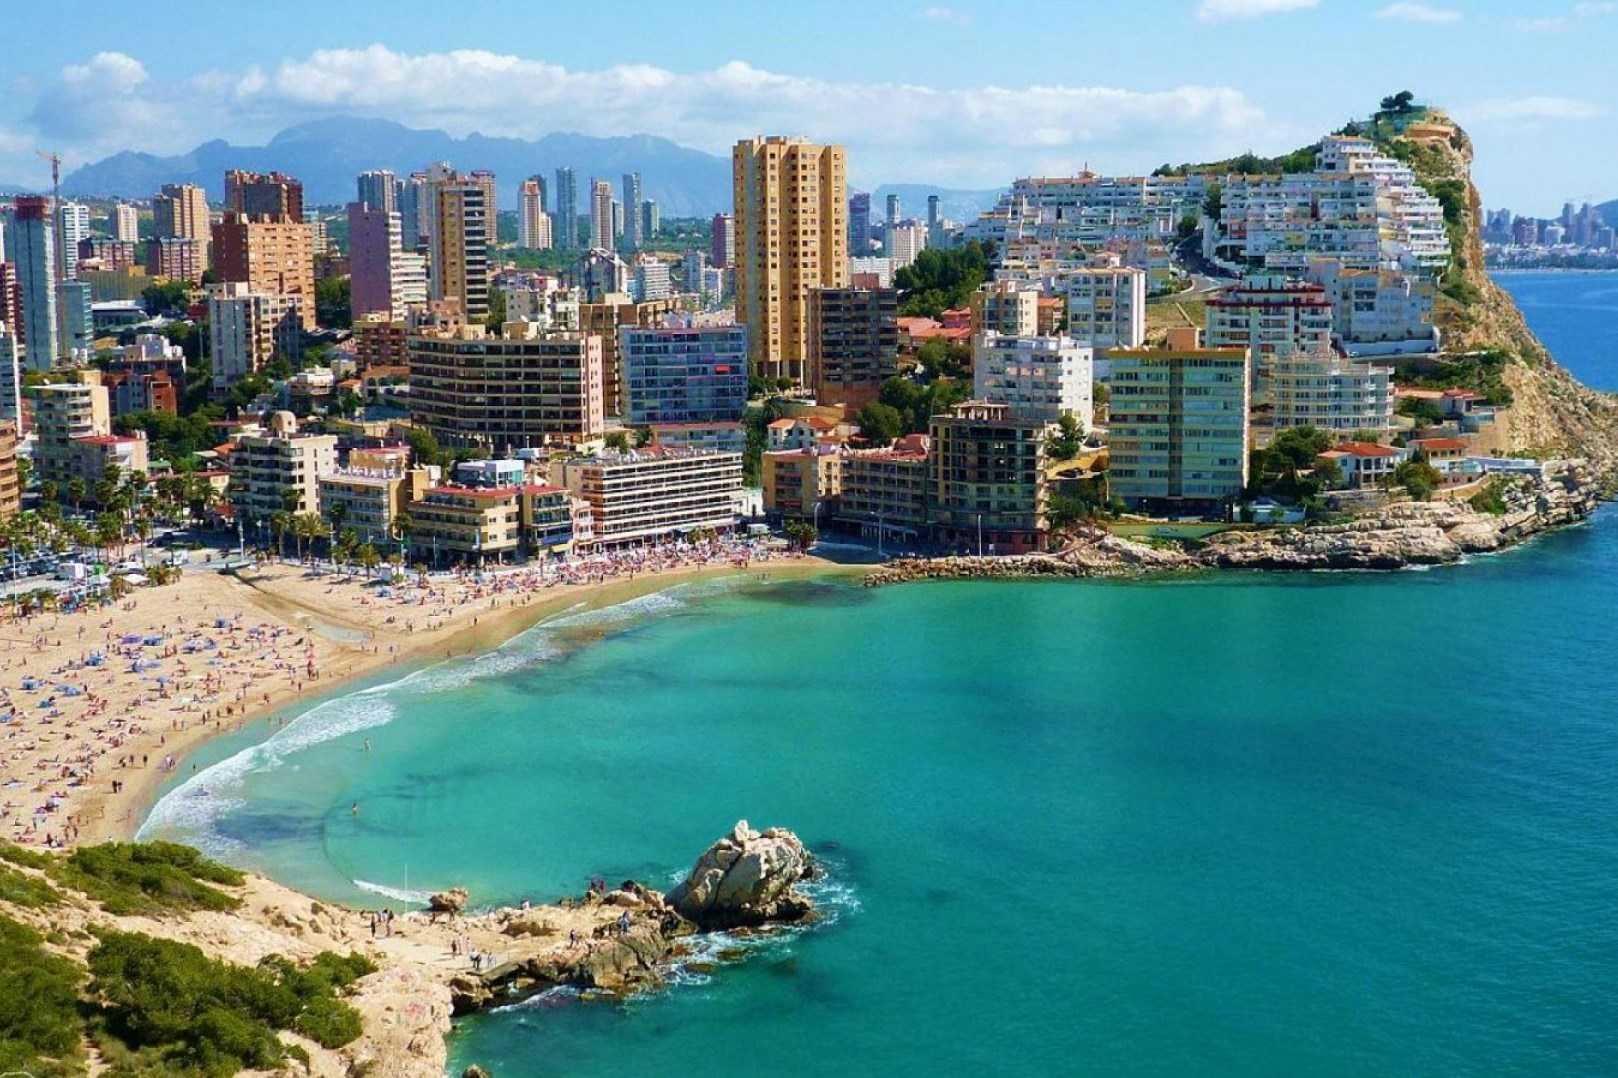 Пляжи и отели коста бланки: 11 лучших мест для отдыха на море в испании – 2022 отзывы туристов и форум "ездили-знаем!"